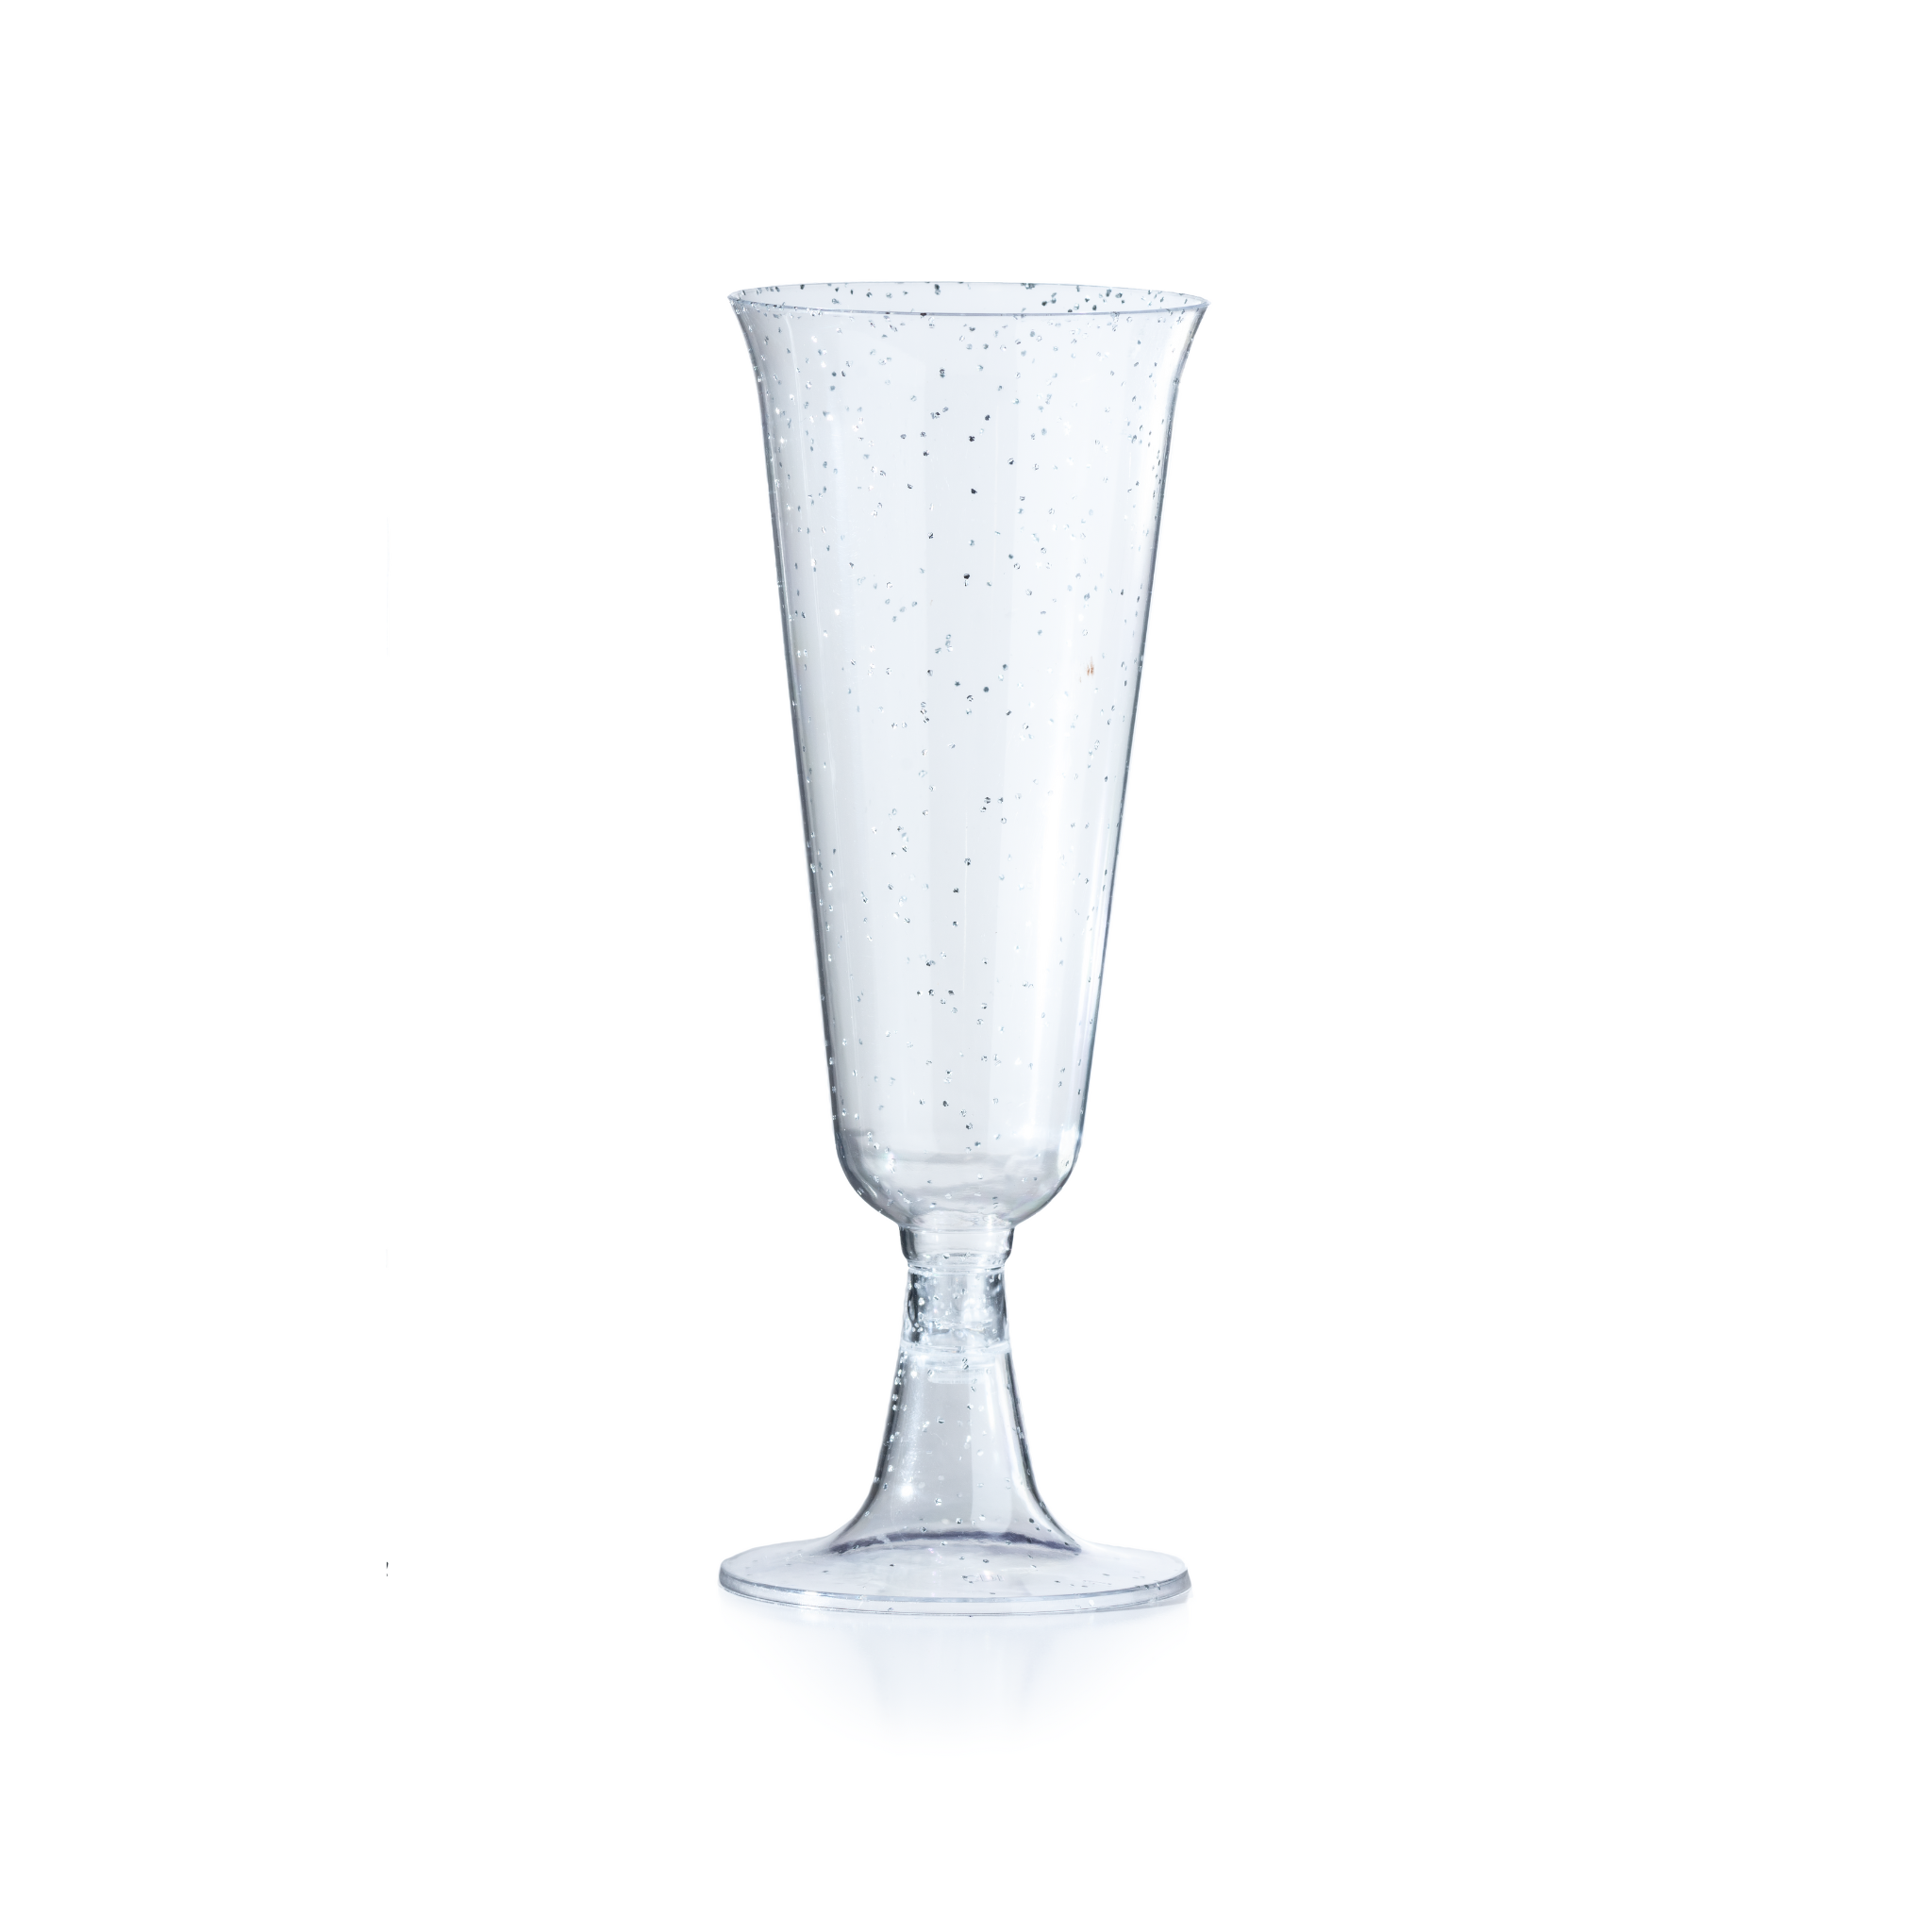 5 oz. Silver Sparkle Plastic Flute Glasses | 144 Count